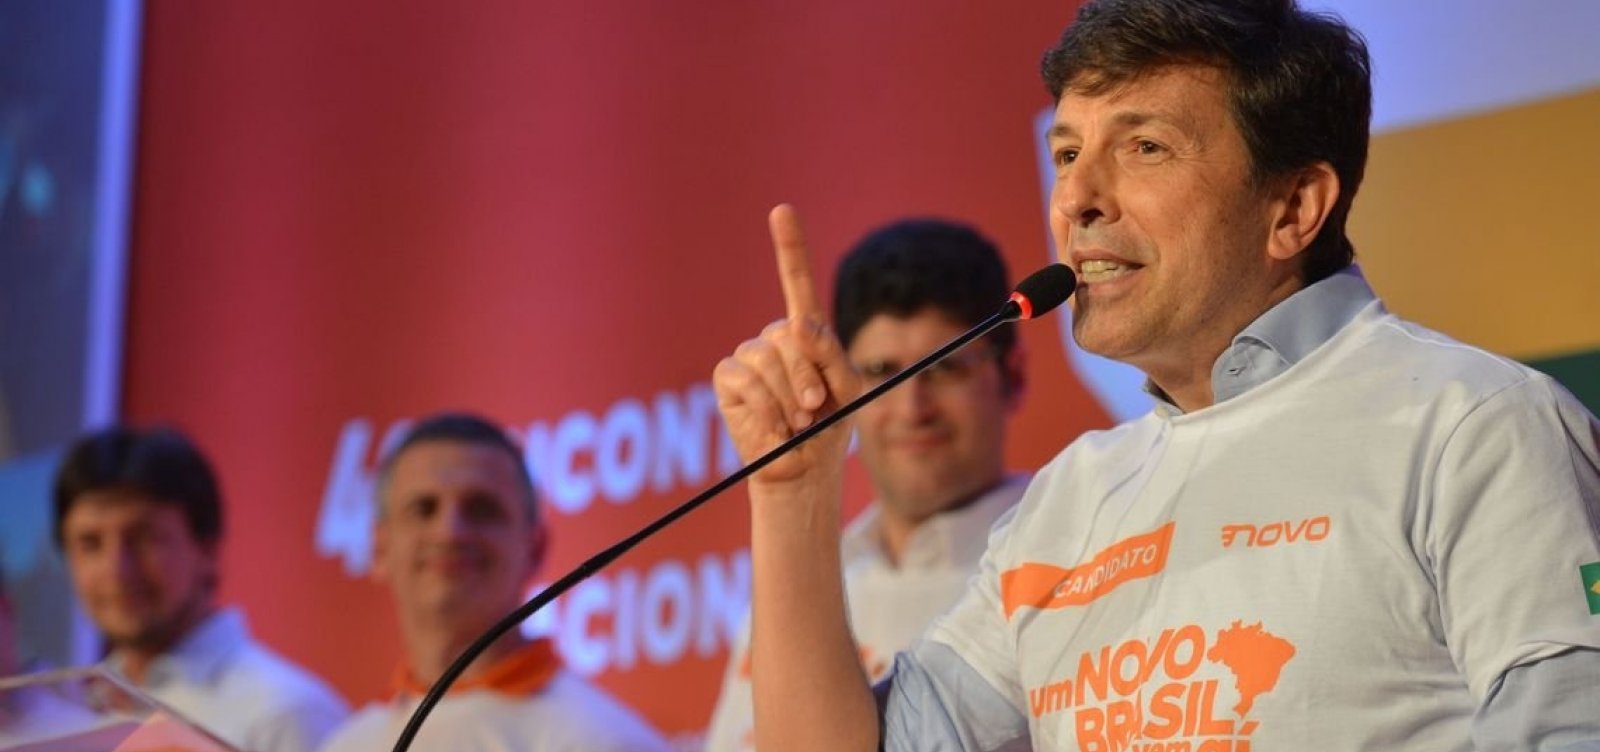 'Bolsonarismo foi muito forte, mas está decrescente', afirma Amoêdo